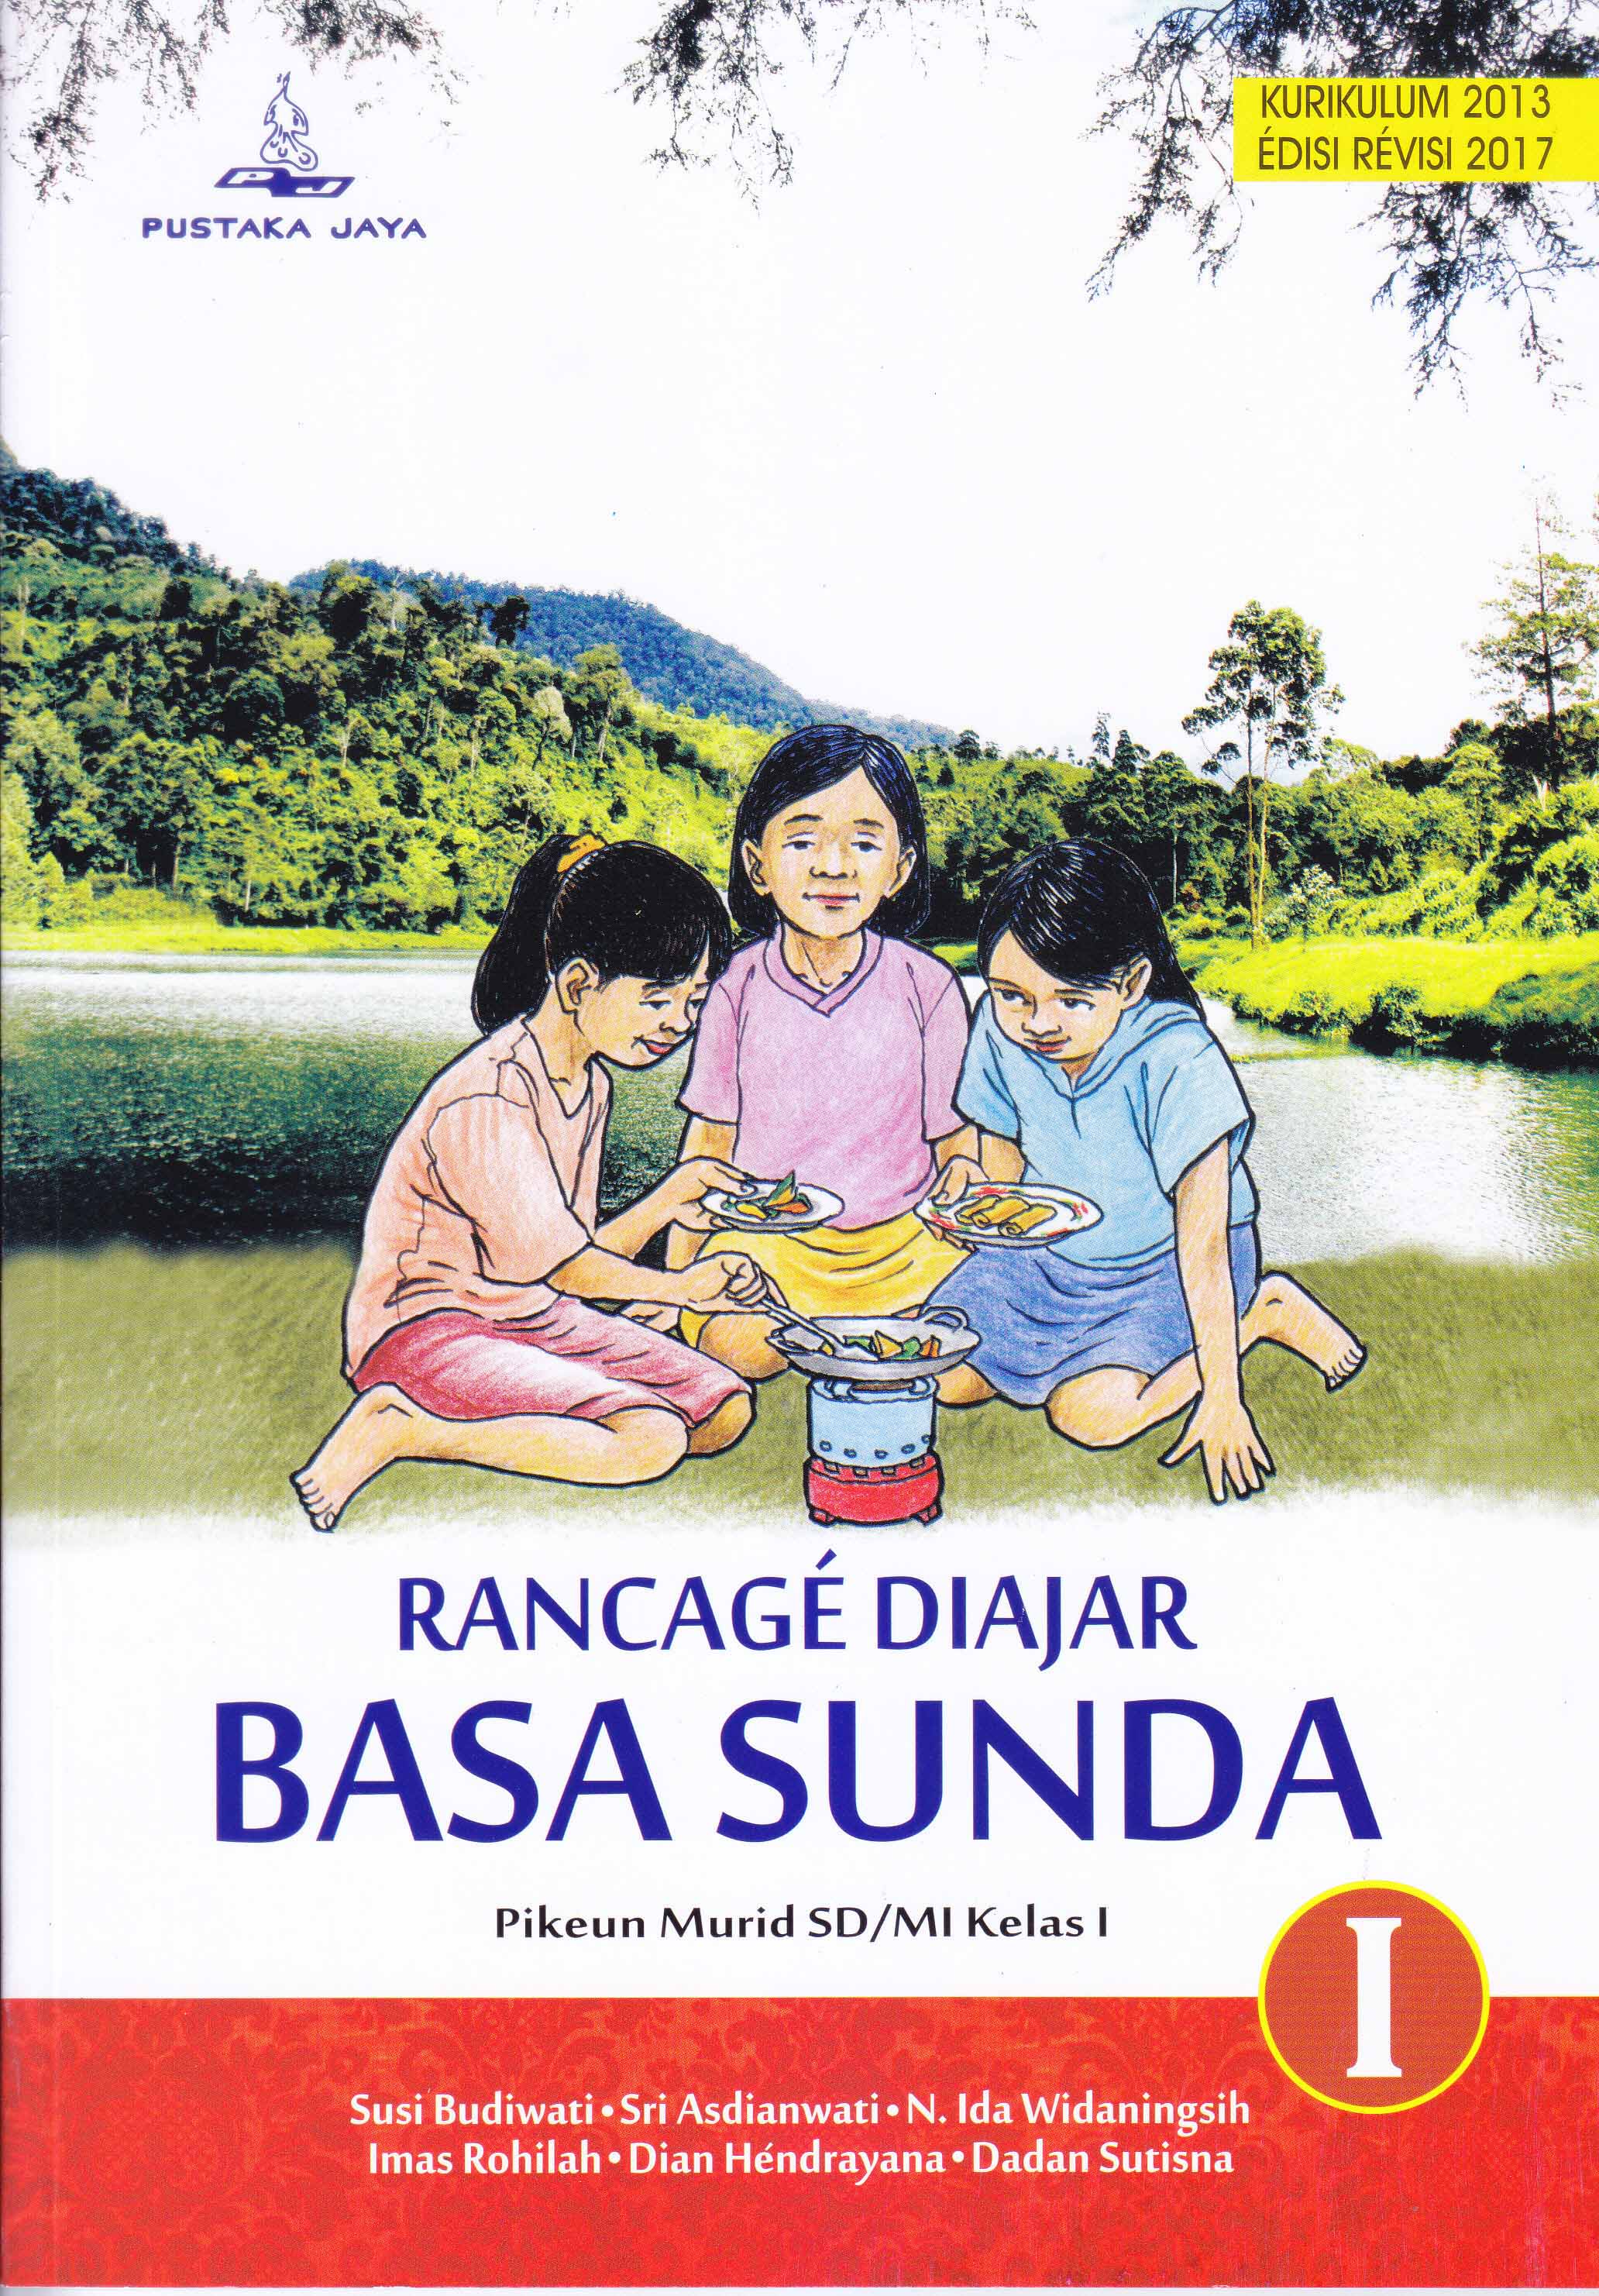 Download Buku Rancage Diajar Basa Sunda Kelas 11 Cara Mengajarku Images